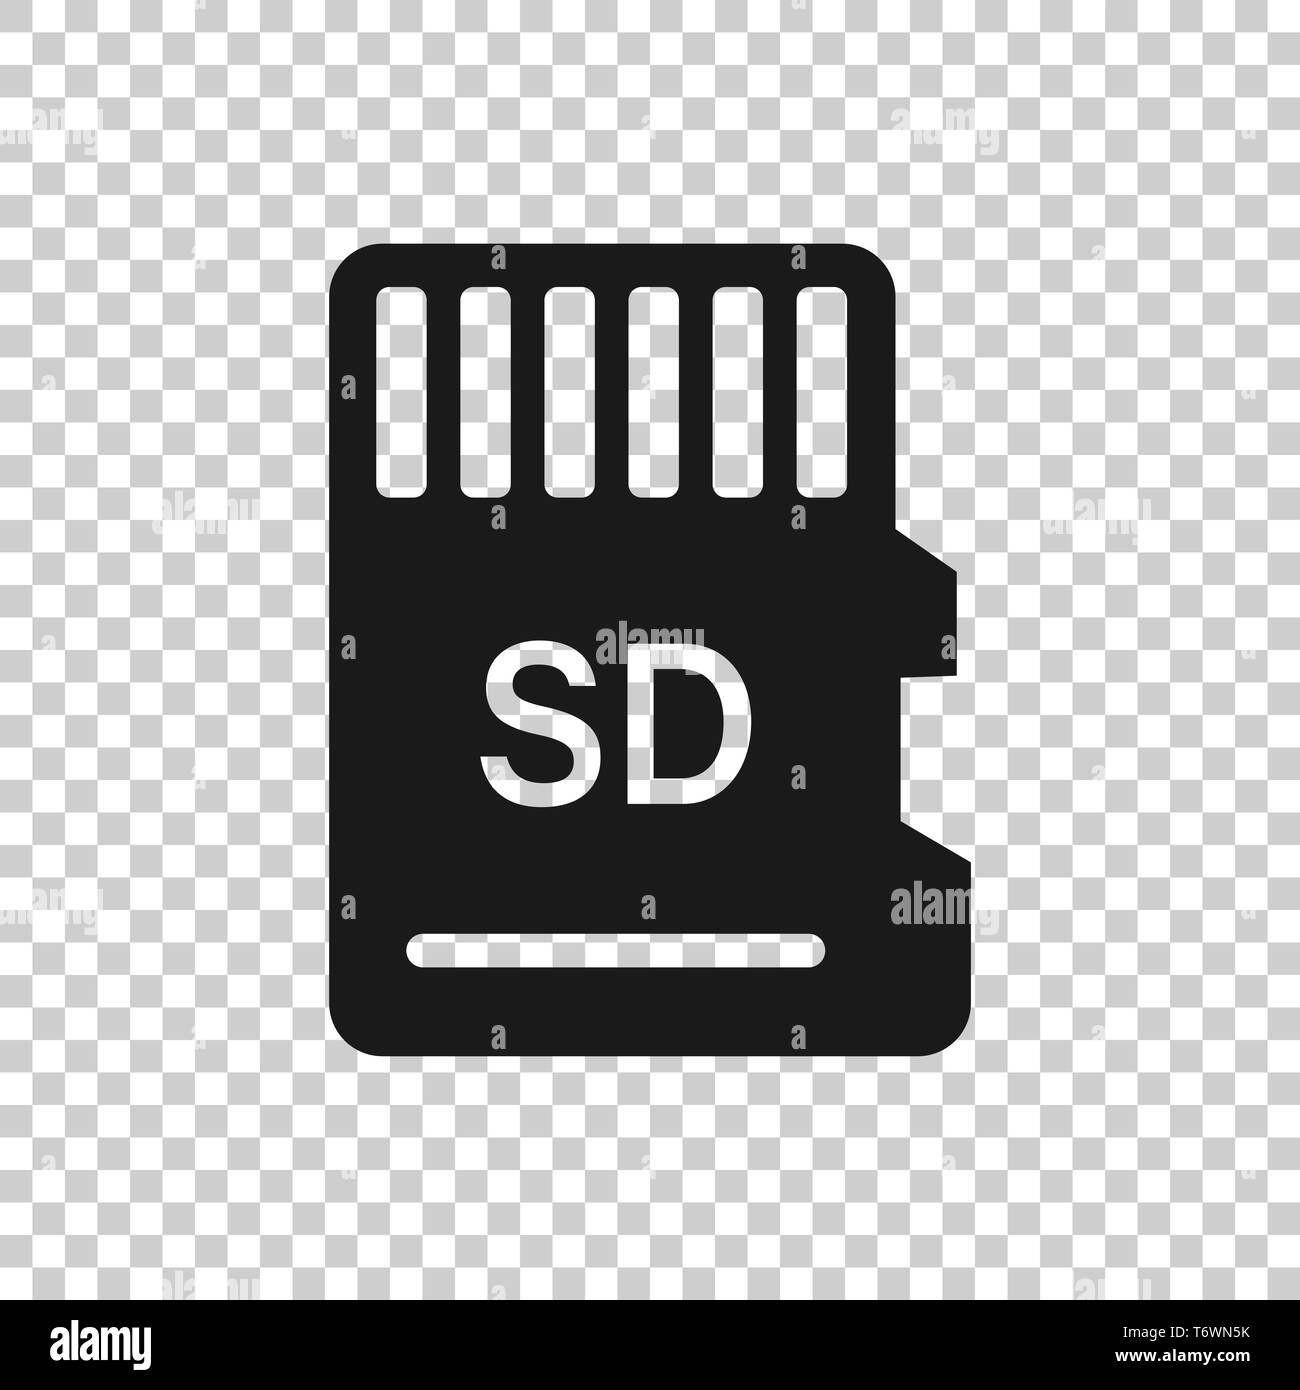 Sd card icon Banque d'images vectorielles - Alamy